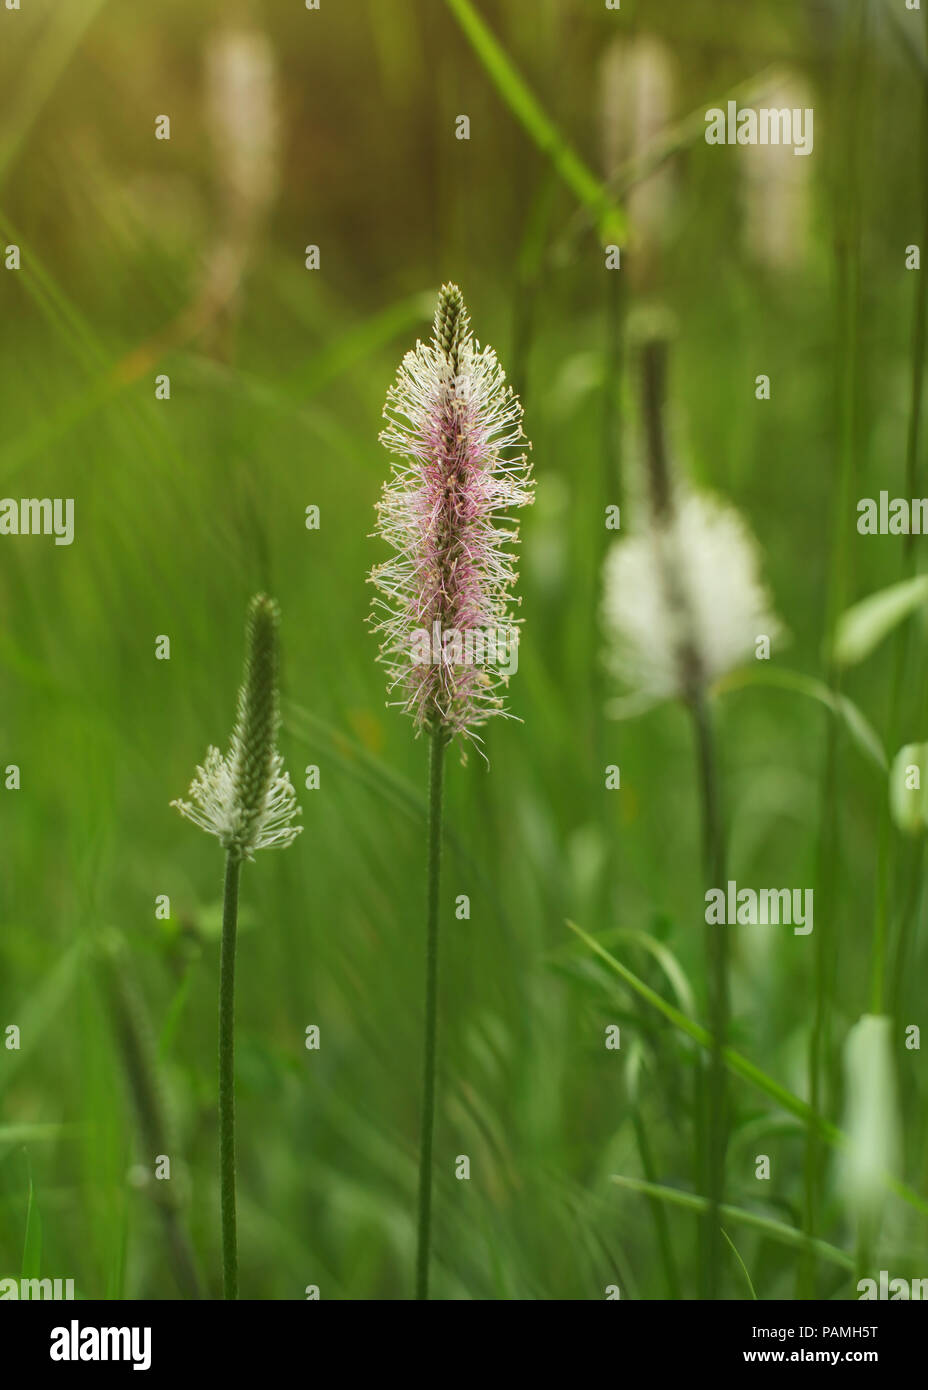 Flache Tiefenschärfe Foto, nur die Blume der Spitzwegerich (Lamm Zunge, Plantago Integrifolia) im Fokus, mit grünen Bokeh in wieder verwischt. Abstrac Stockfoto